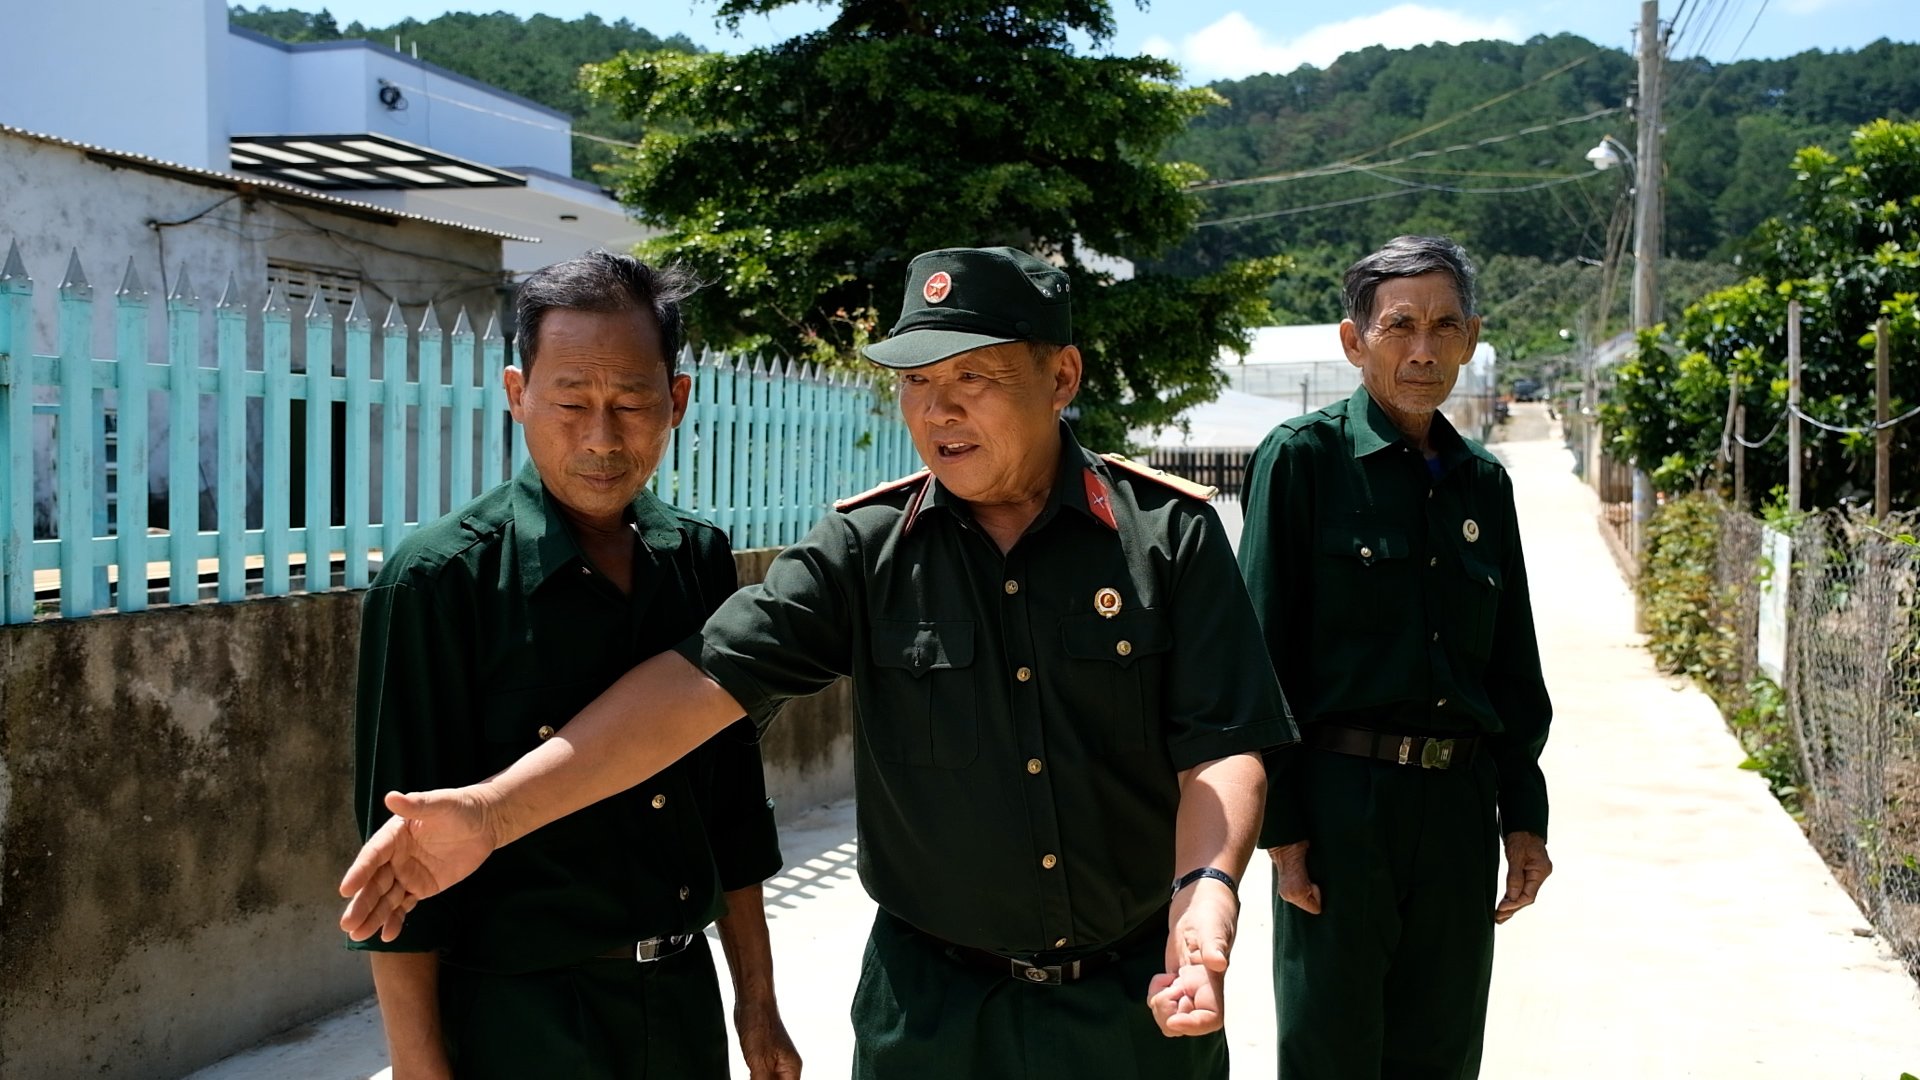 TÁC PHẨM DỰ THI VIẾT VỀ XÂY DỰNG NÔNG THÔN MỚI: Những cựu chiến binh "Bộ đội Cụ Hồ" xây dựng nông thôn mới